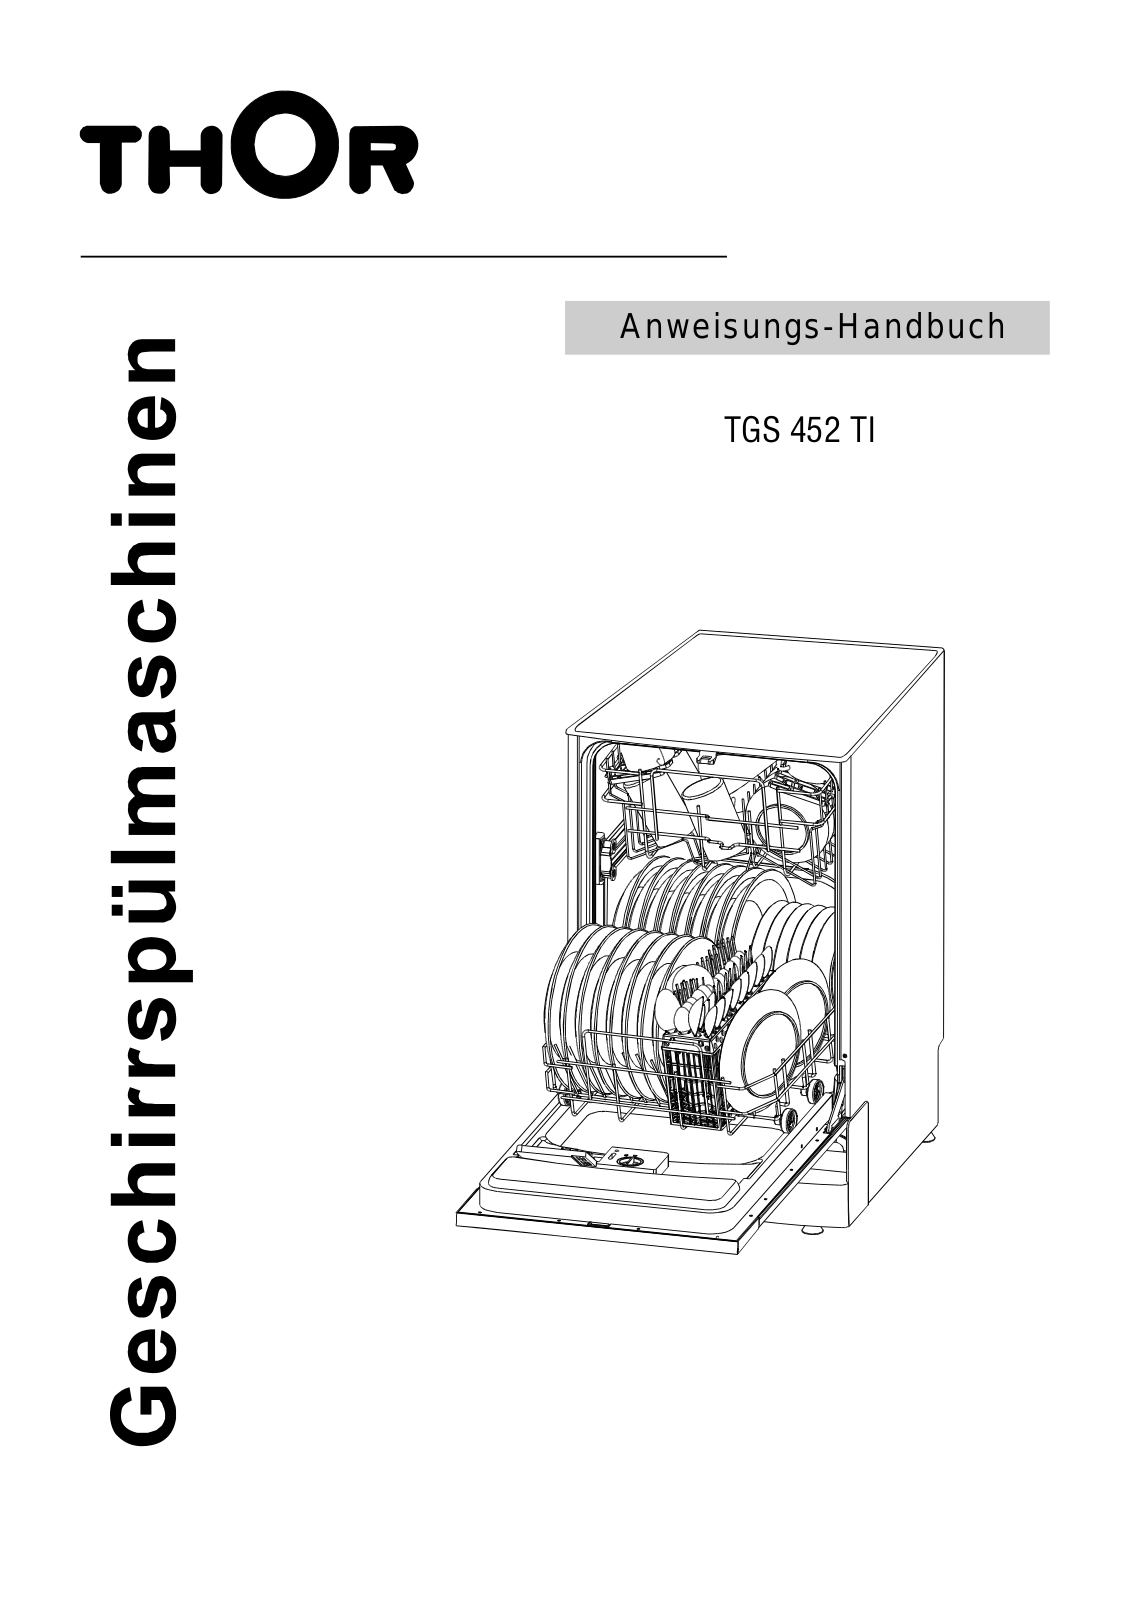 Thor TGS 452 TI User Manual